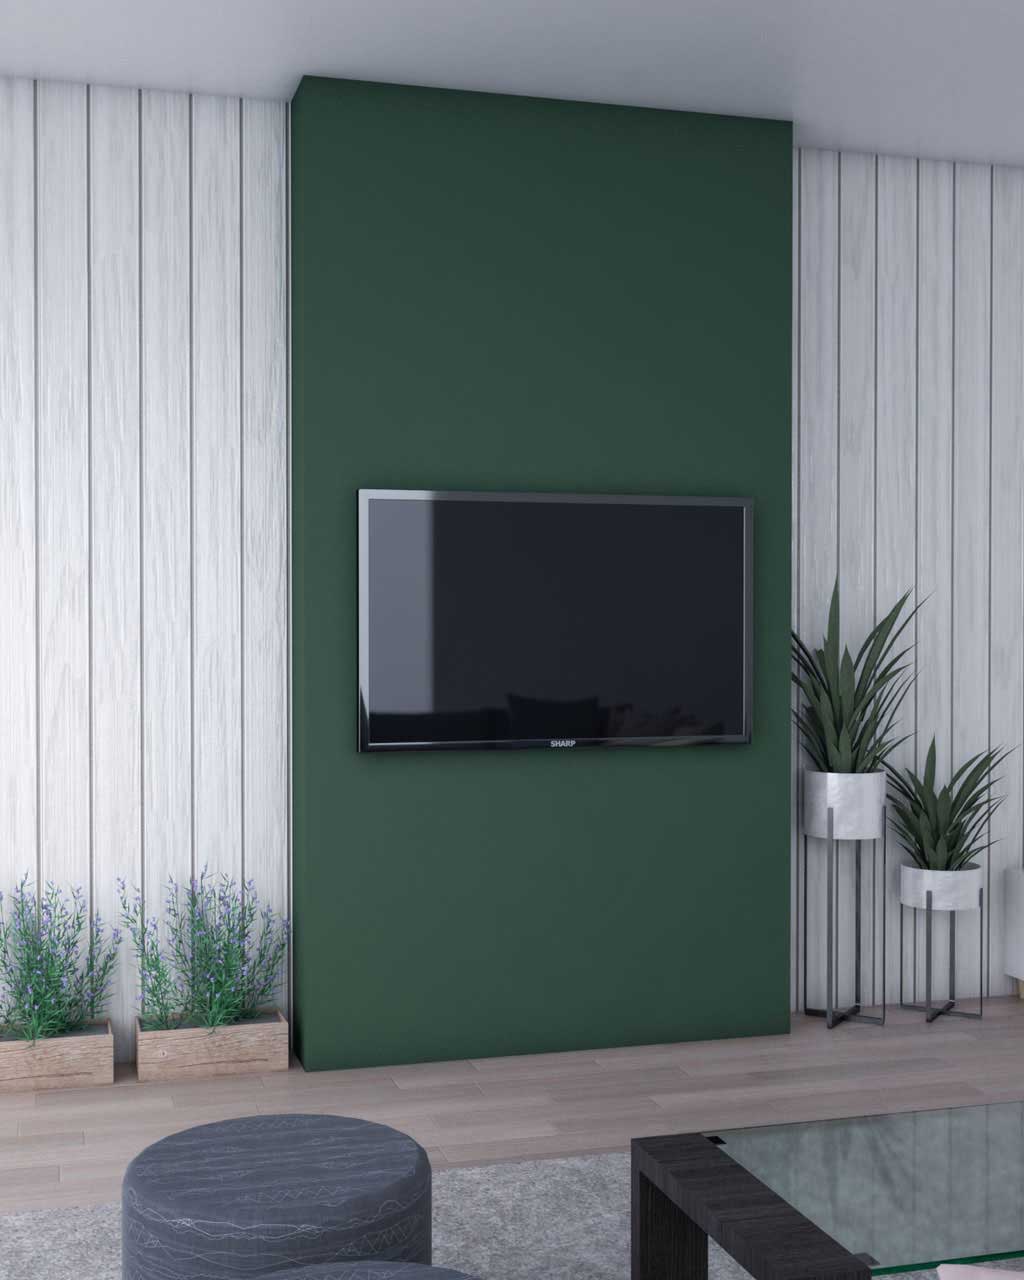 نقاشی دیوار پشت تلویزیون به رنگ سبز با طرح عمودی